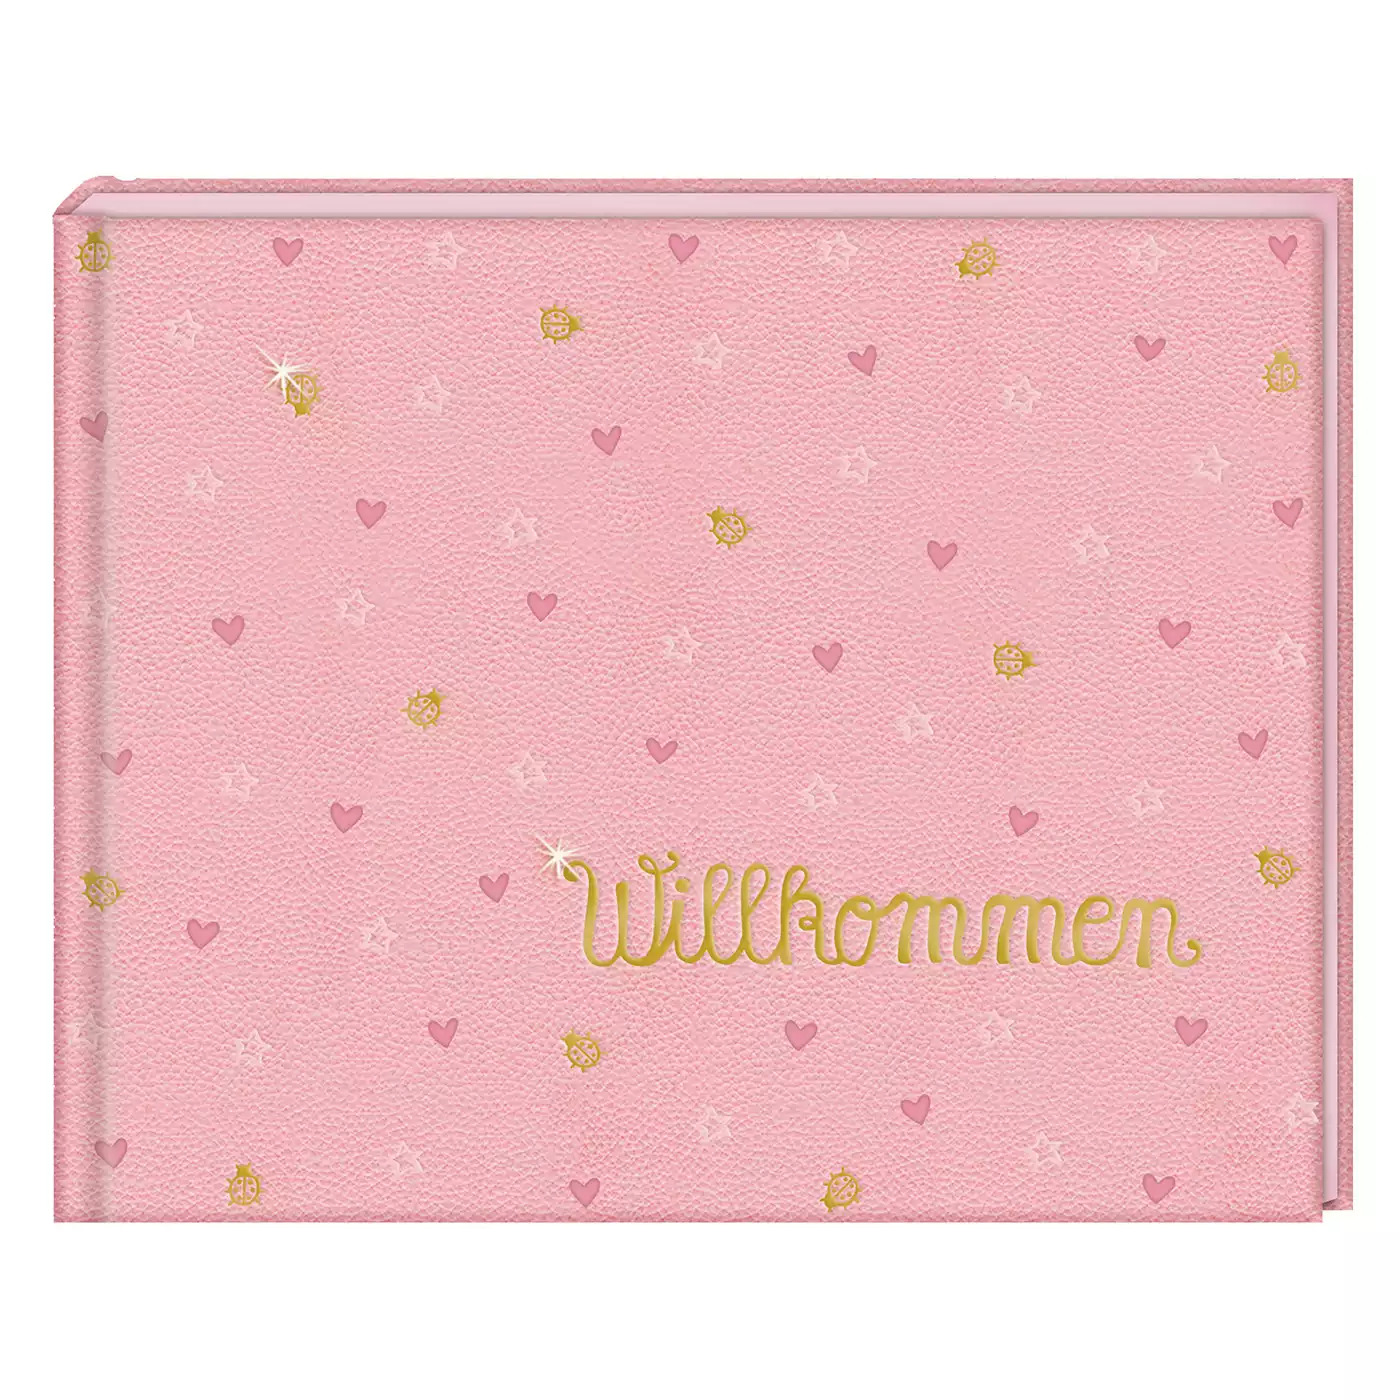 Babyalbum Willkommen BabyGlück DIE SPIEGELBURG Pink Rosa 2000576399902 3